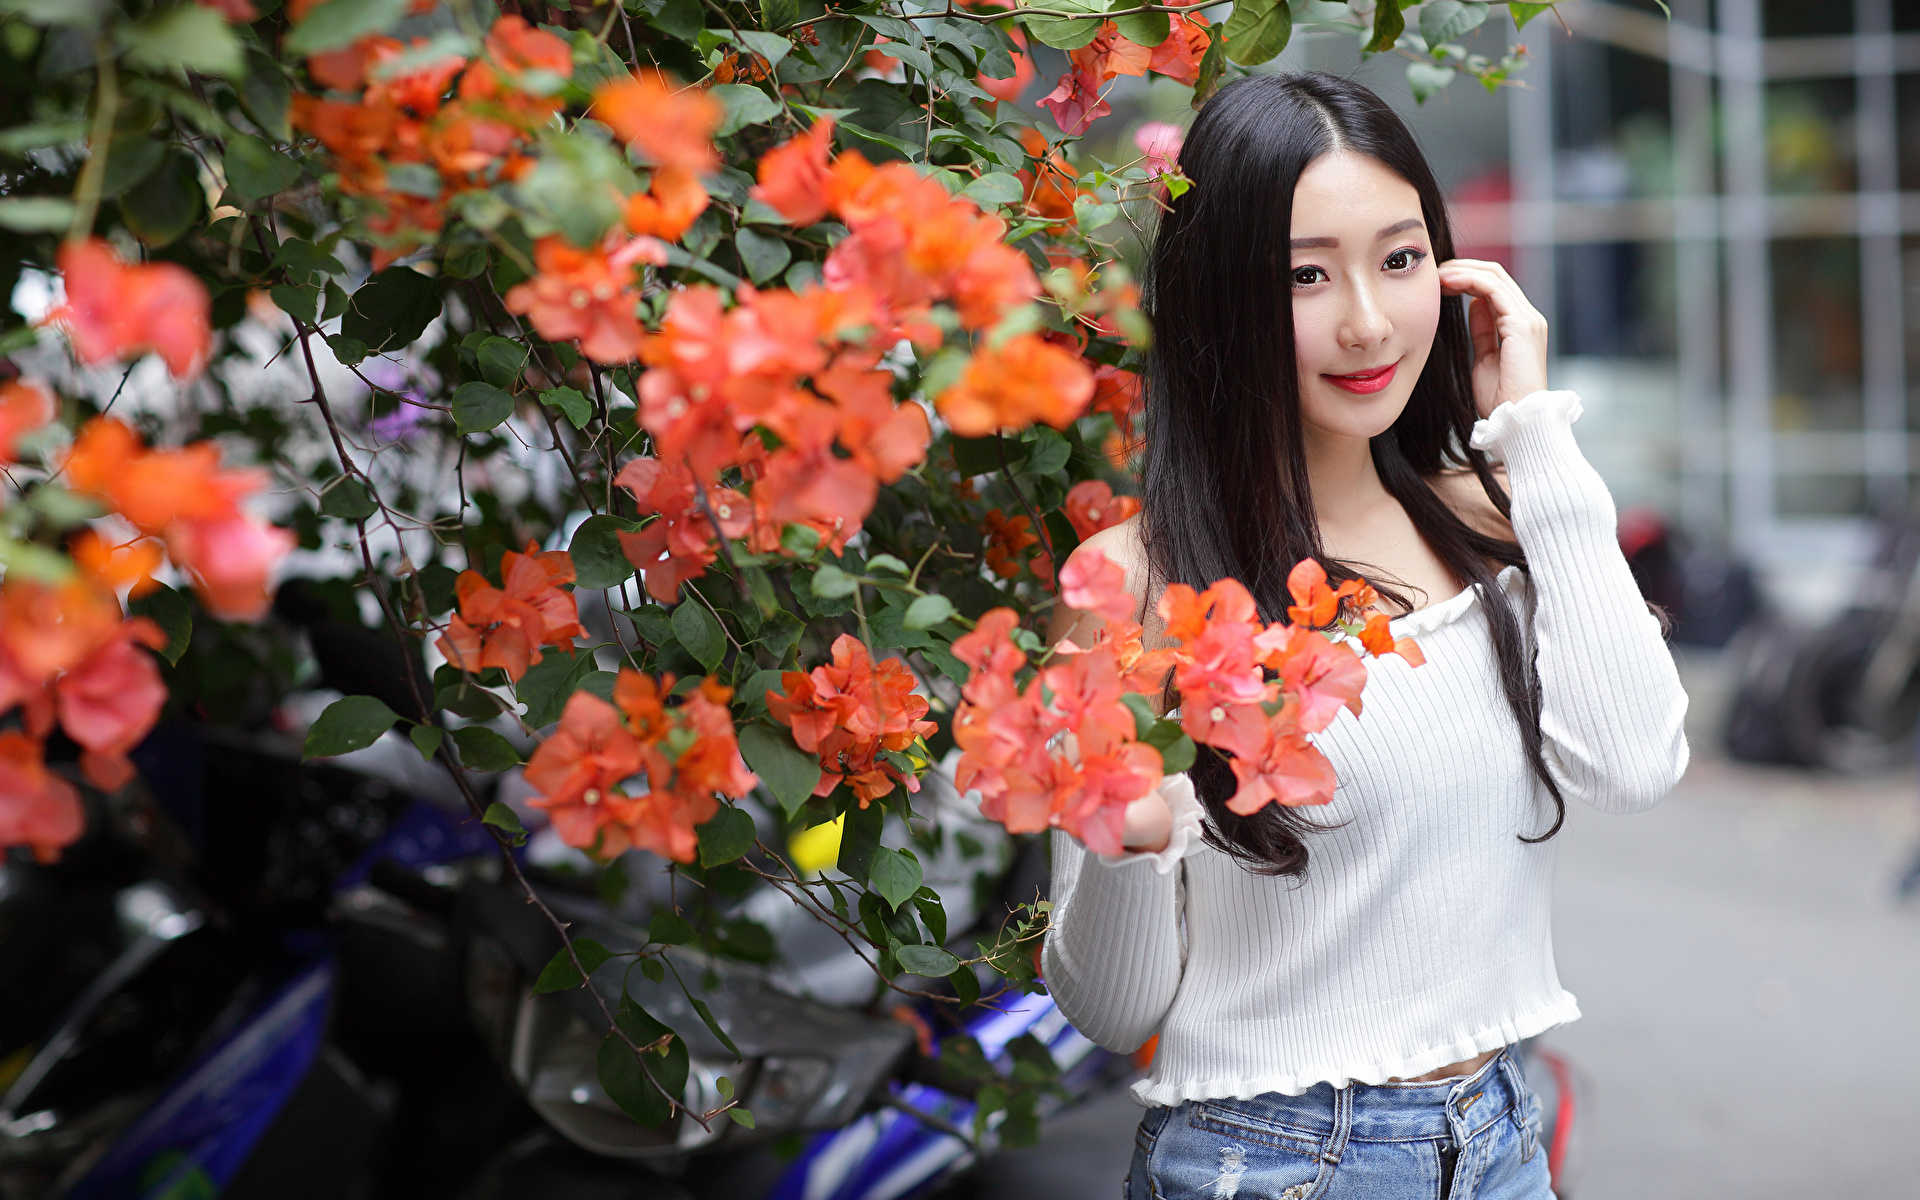 Фото брюнеток молодые женщины Азиаты смотрят Цветущие деревья 1920x1200 брюнетки Брюнетка девушка Девушки молодая женщина азиатки азиатка Взгляд смотрит